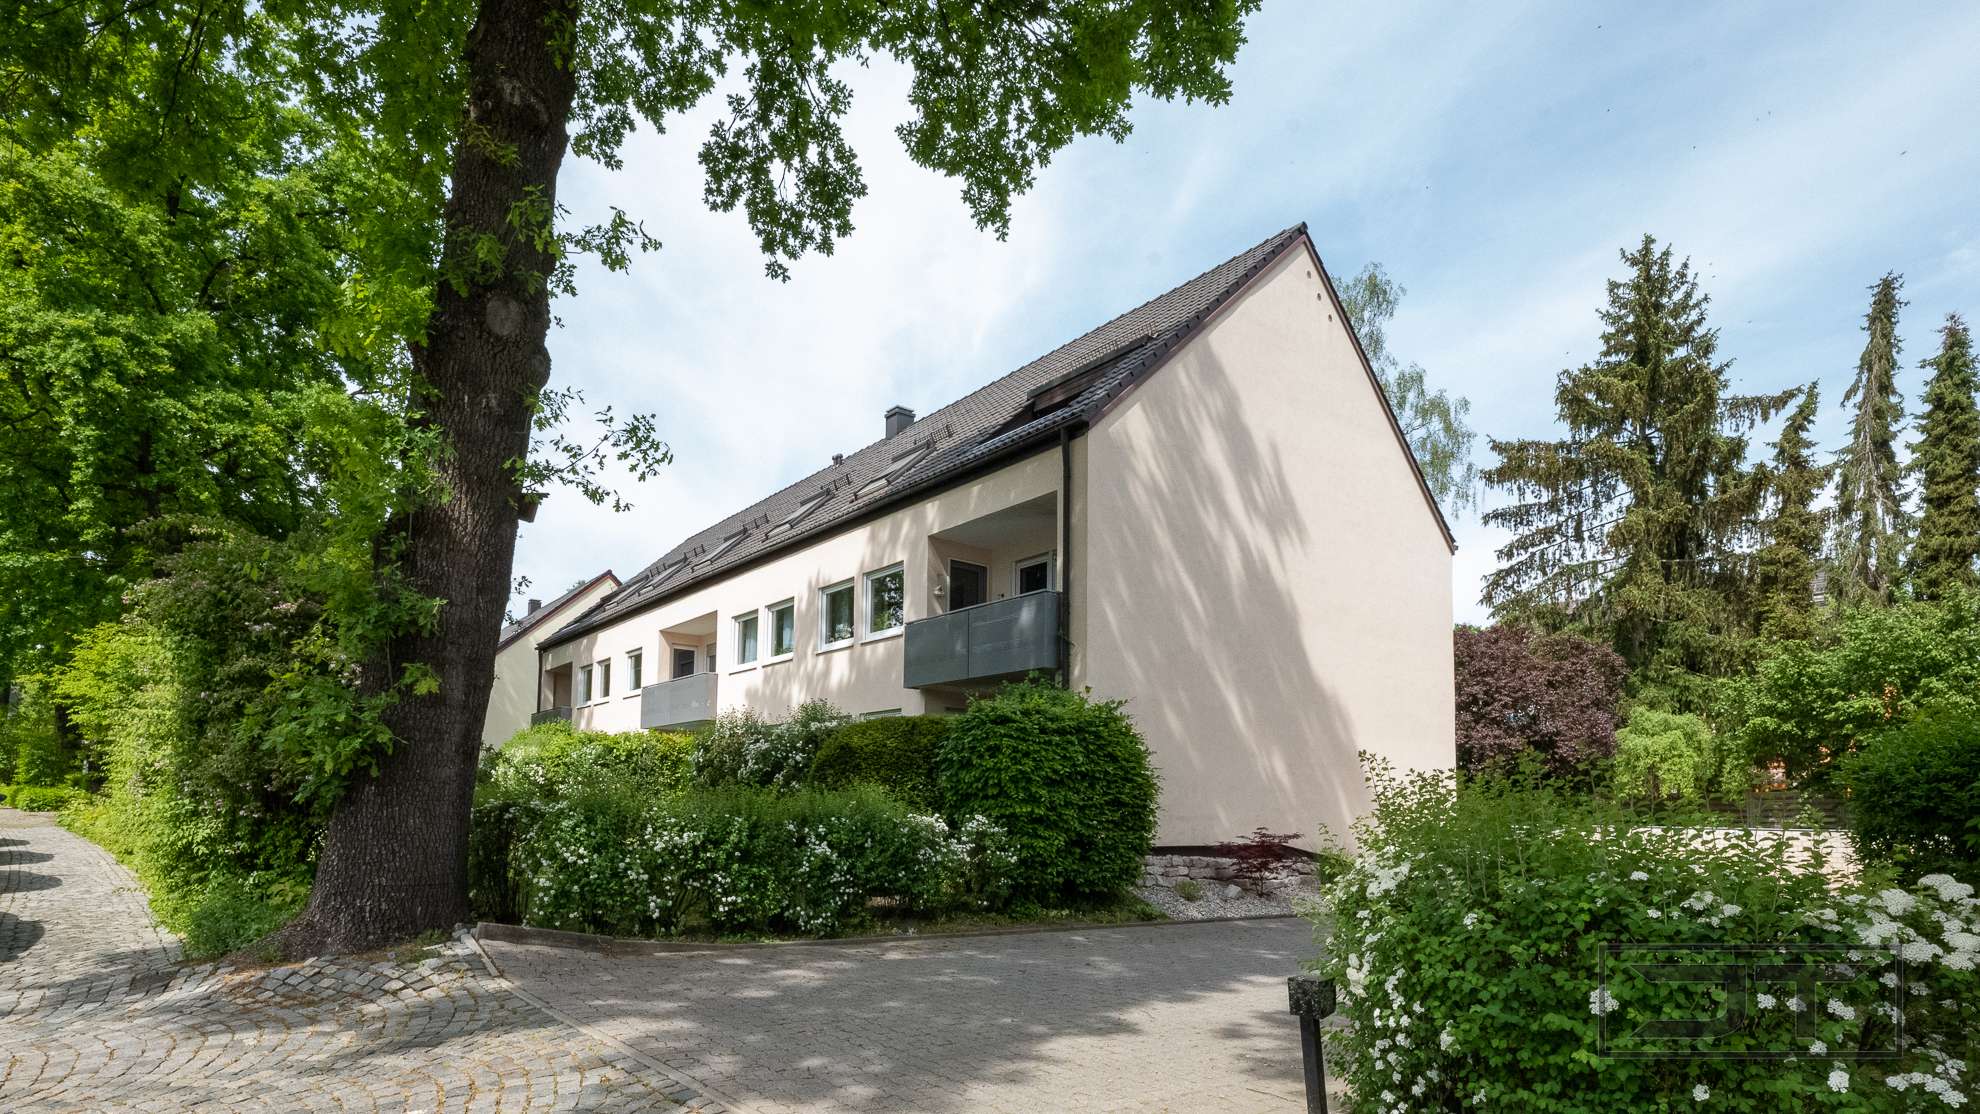 Moderne 3-Zimmer-DG-Wohnung mit Einbauküche und Balkon in guter Bayreuther Lage!